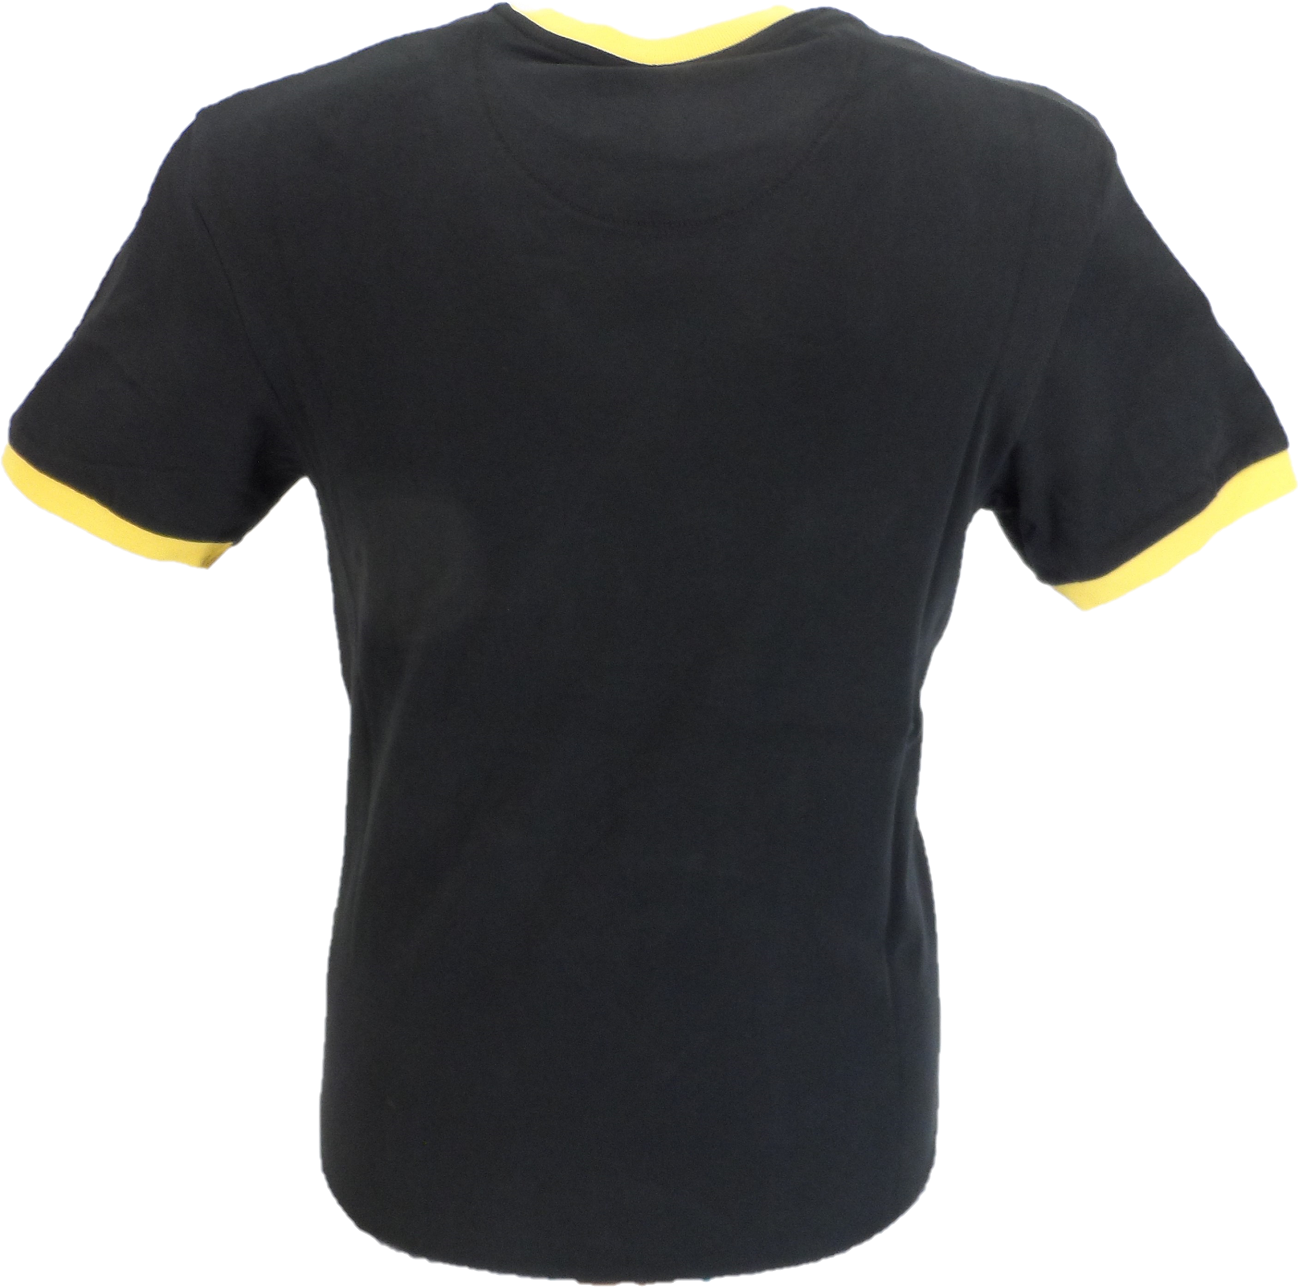 T-shirt da uomo con logo rasta nero 100% cotone pesca Trojan Records